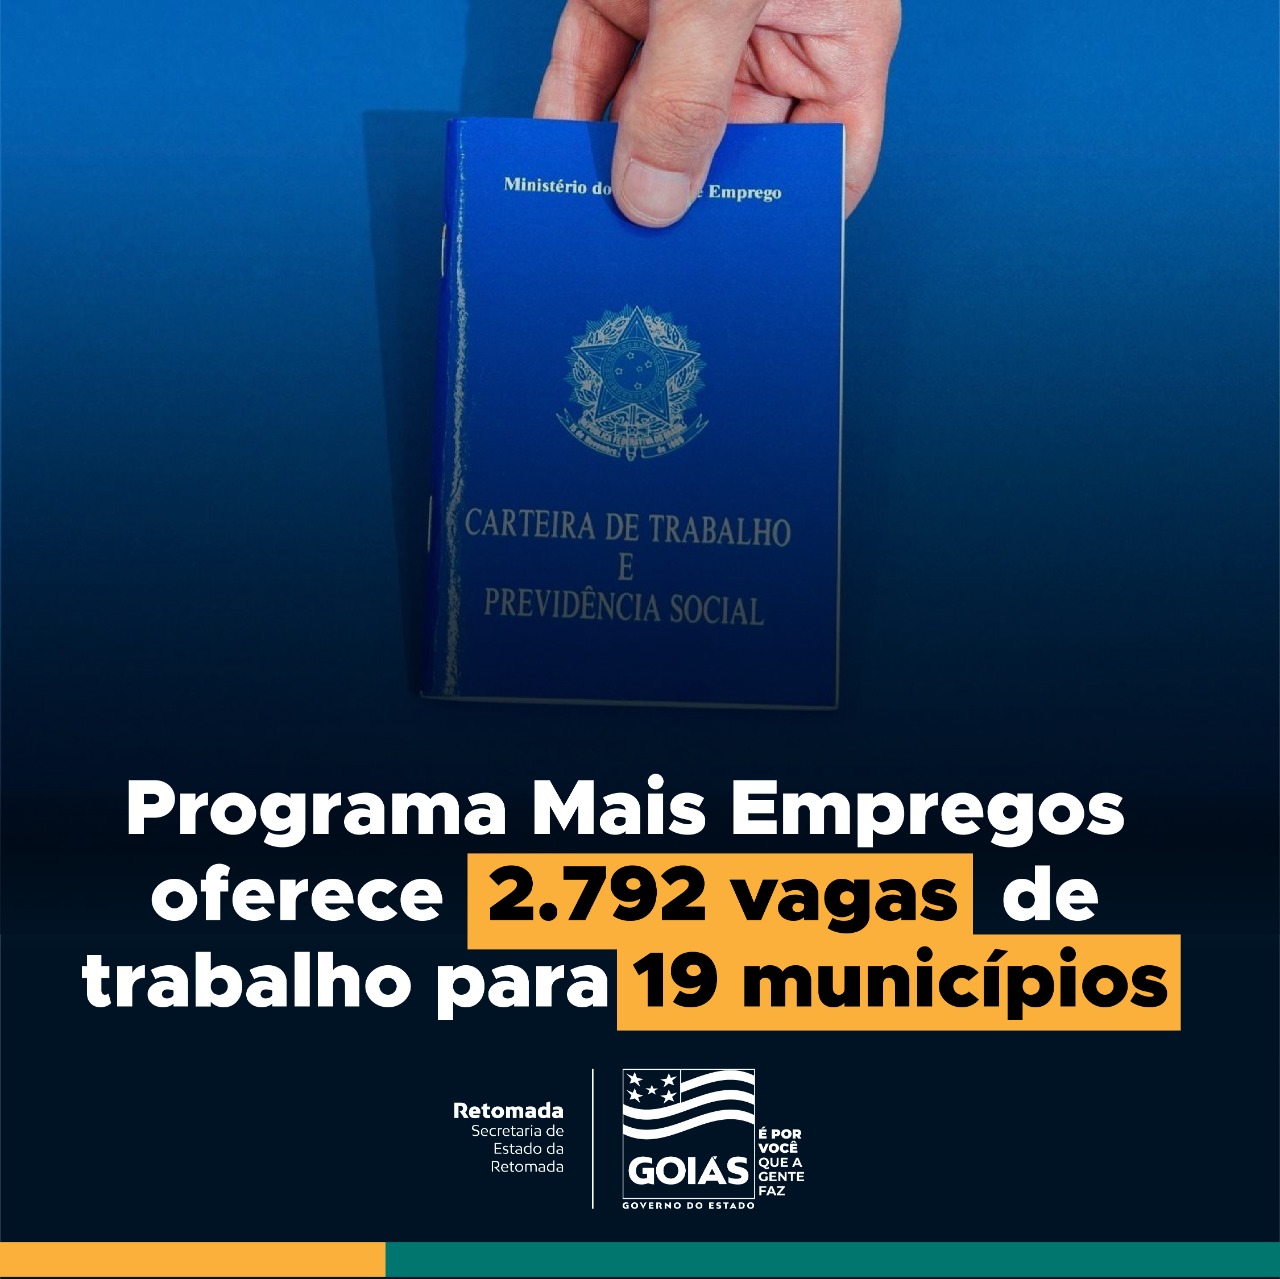 Goiás: Programa Mais Empregos oferece 2.792 vagas de trabalho em 19 municípios